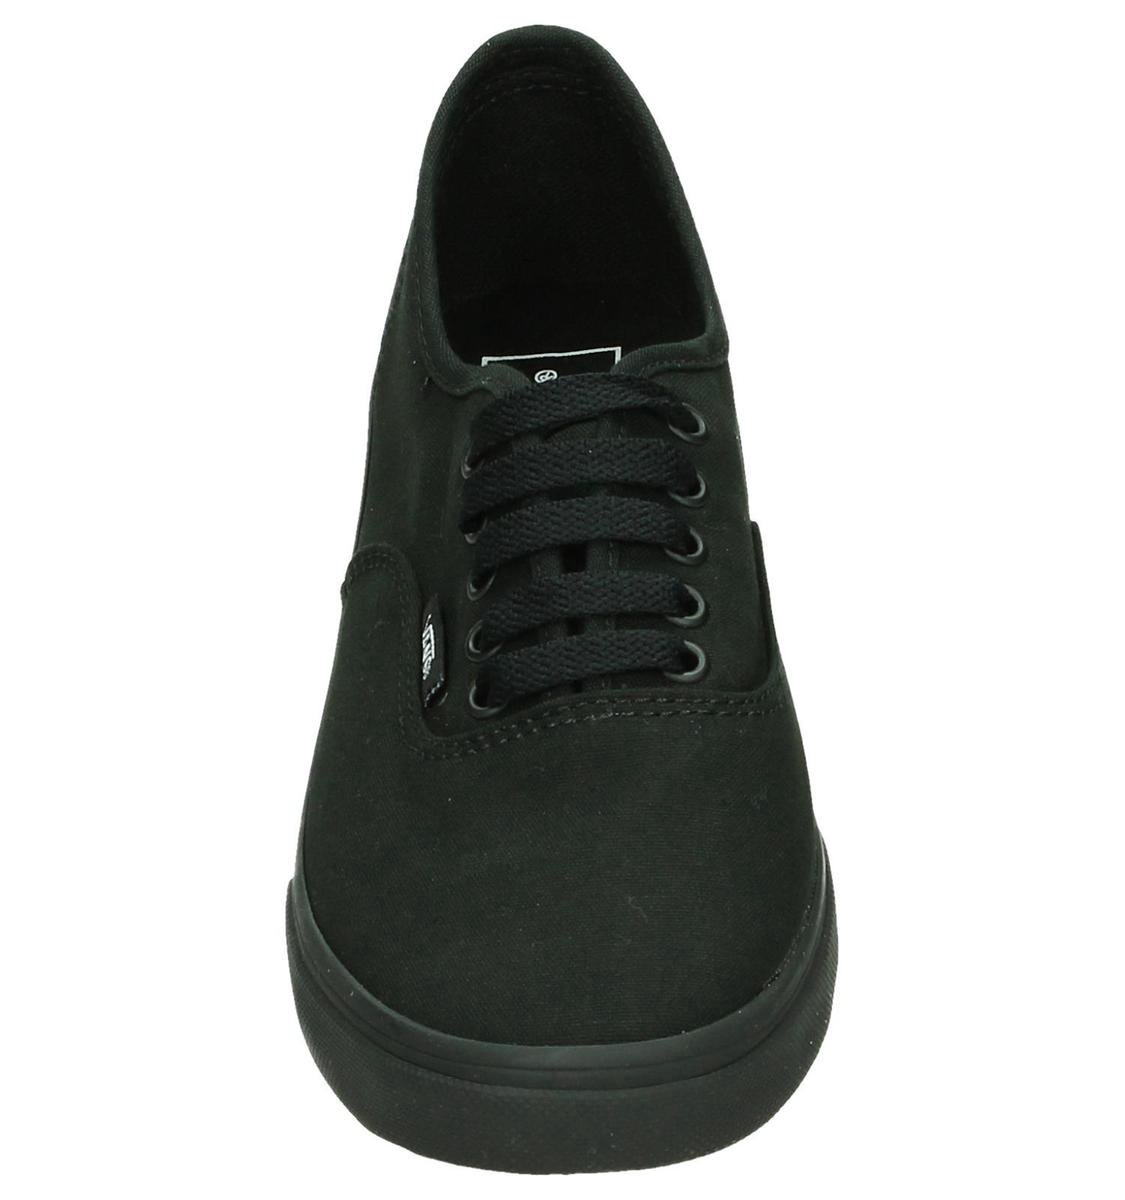 Vans Authentic lo pro - Sneakers - Dames - Maat 40 - Zwart | bol.com